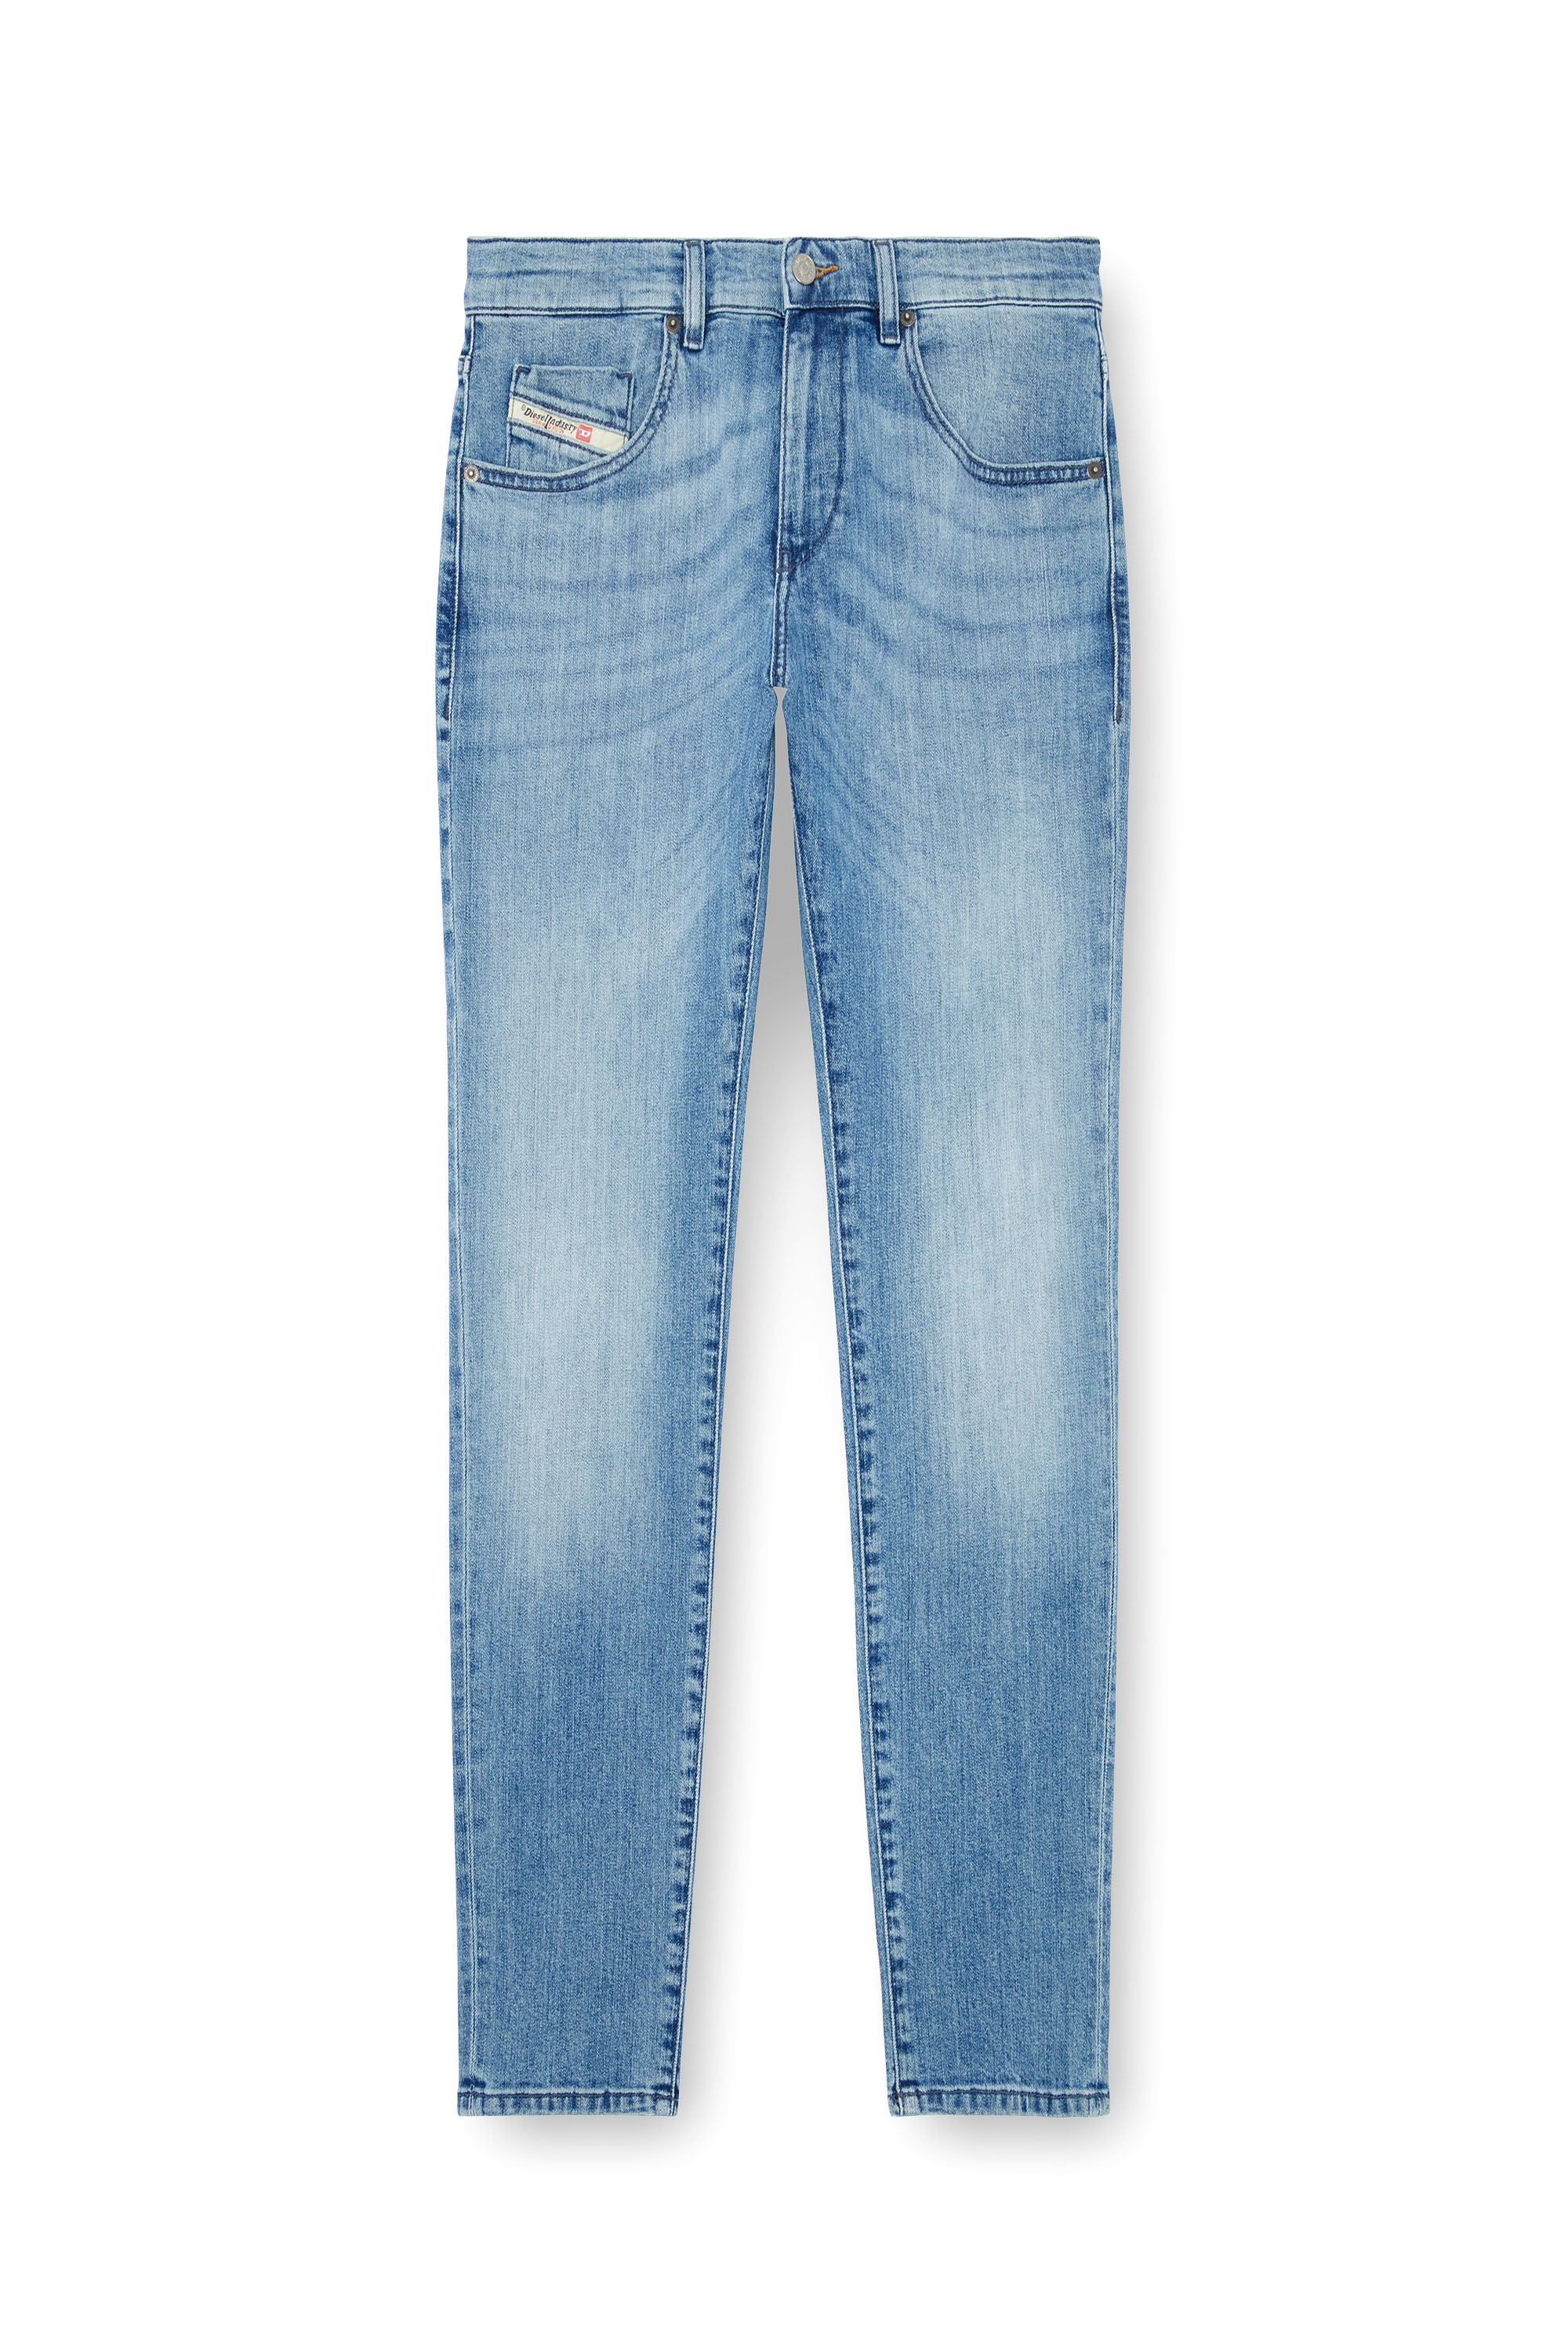 Diesel - Slim Jeans 2019 D-Strukt 0GRDI, Hombre Slim Jeans - 2019 D-Strukt in Azul marino - Image 6